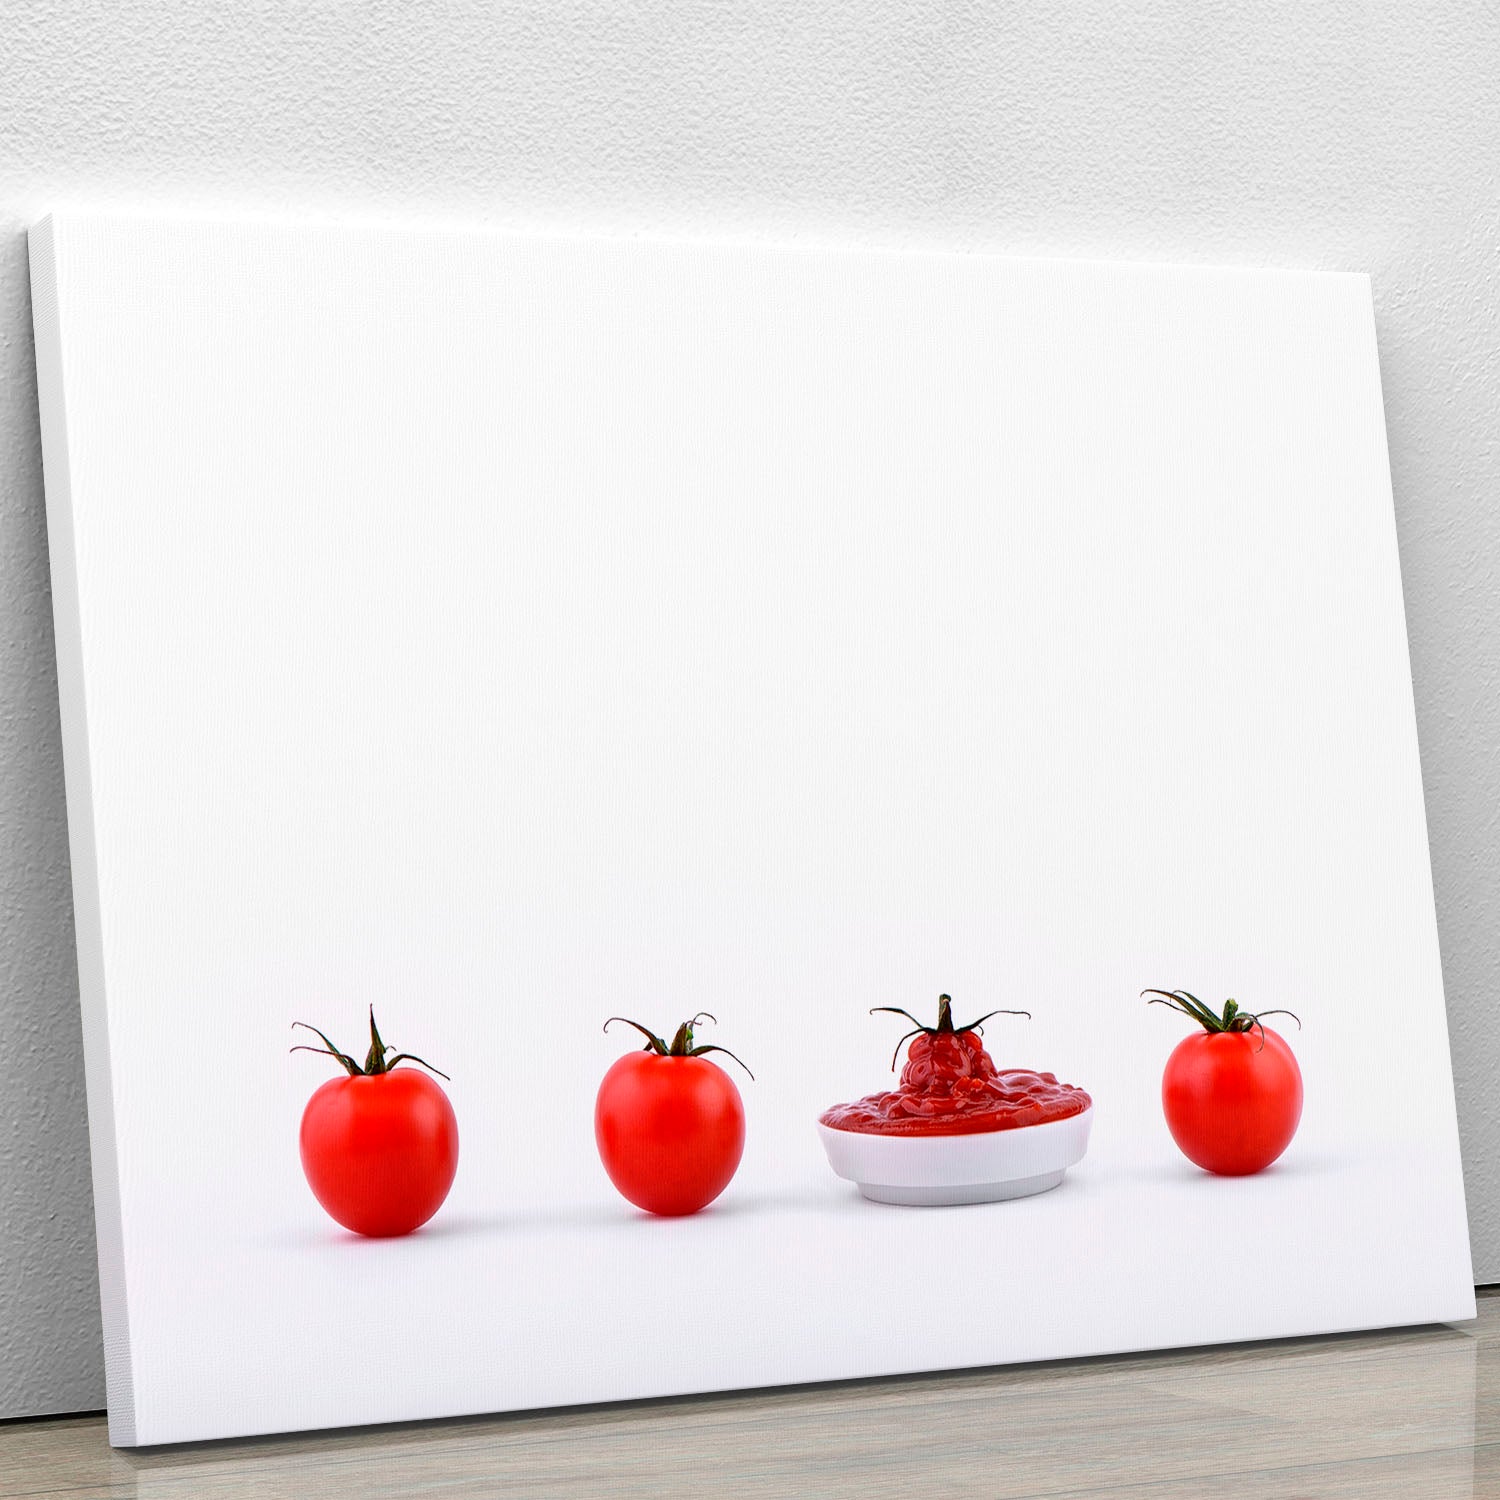 Tomato Tomato Puree Tomato Canvas Print or Poster - 1x - 1